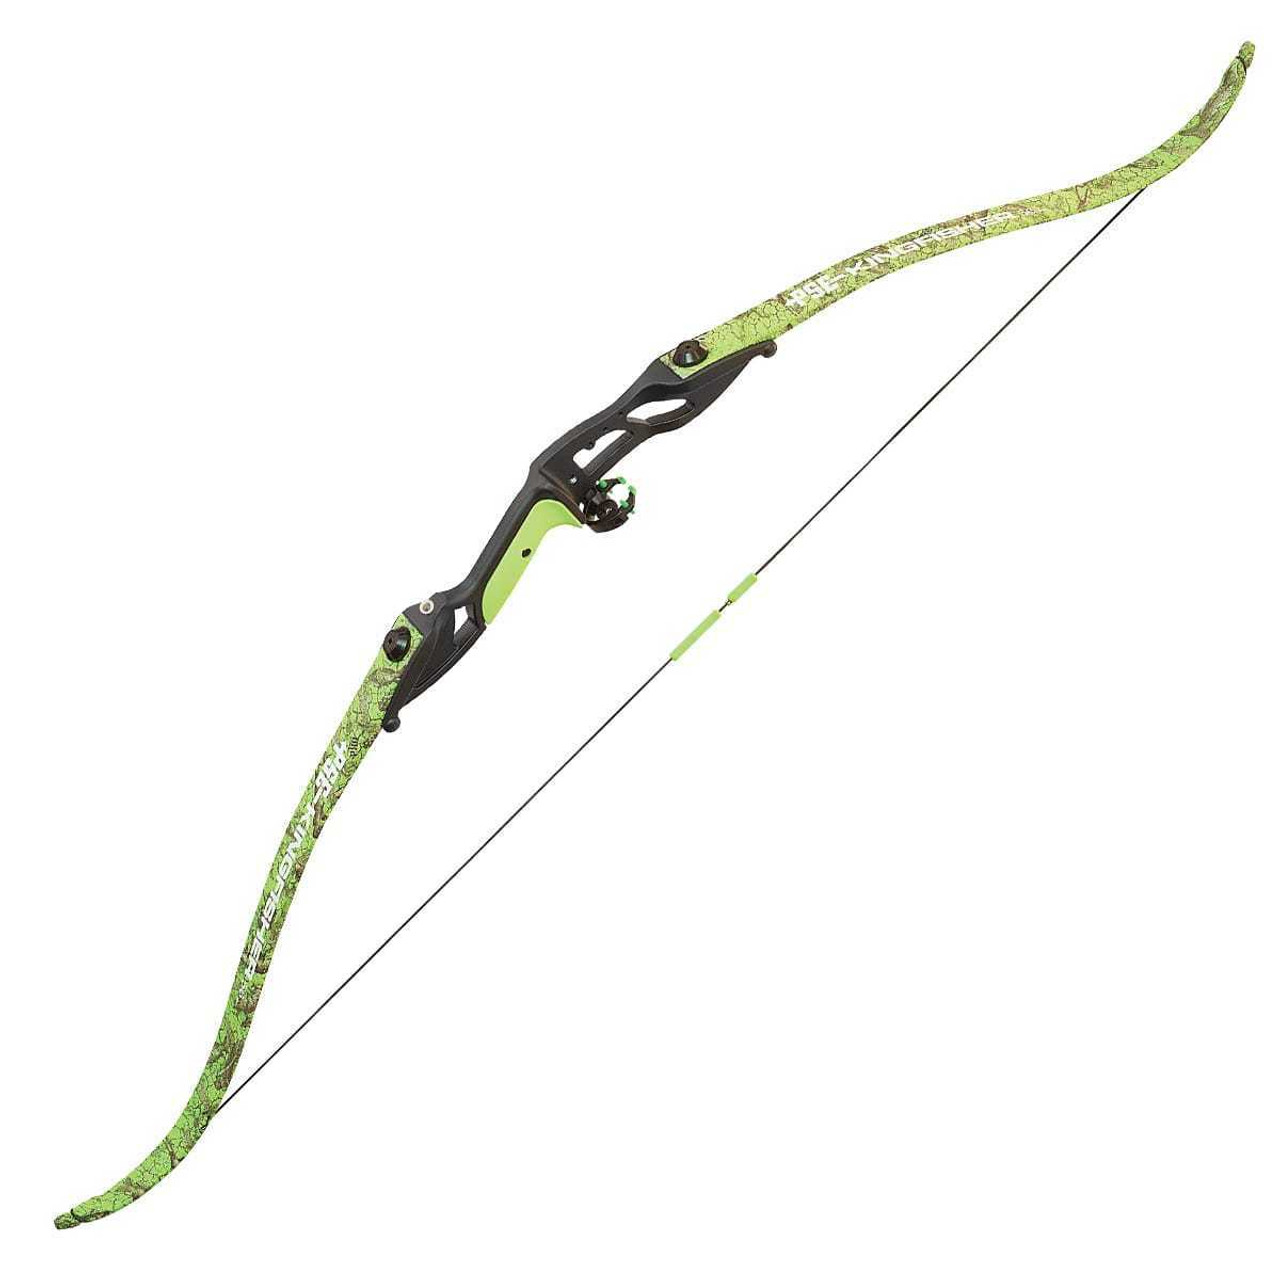 Arrows - Bowfishing Arrows - Mike's Archery